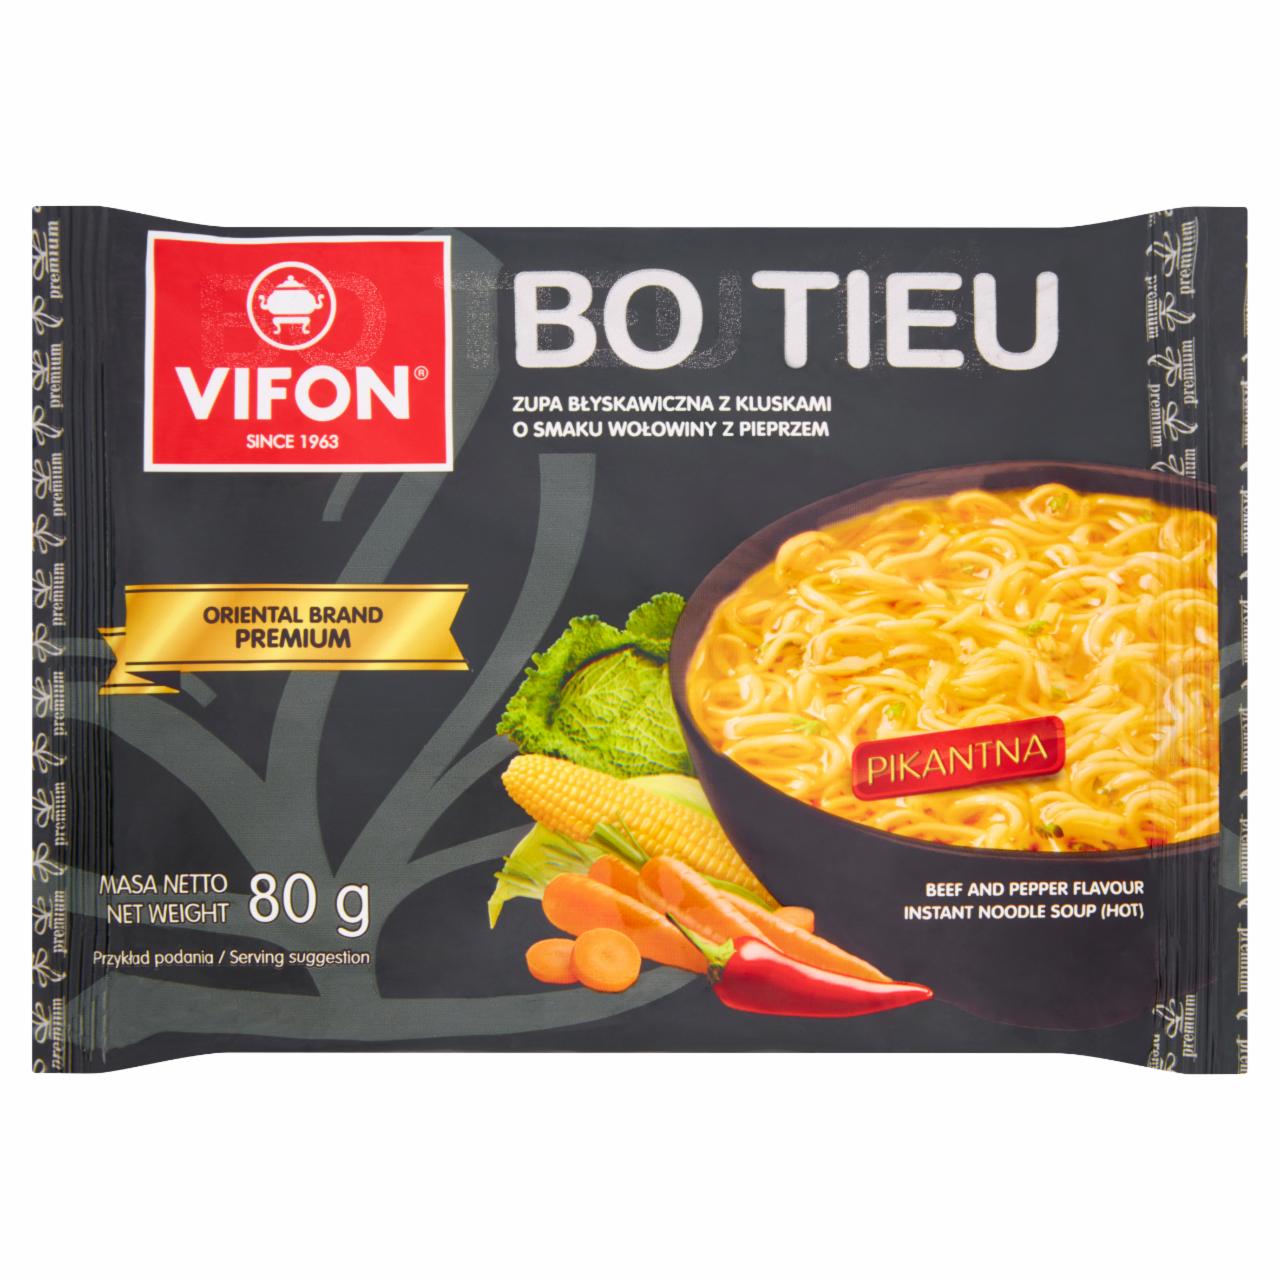 Zdjęcia - Bo Tieu Zupa błyskawiczna z kluskami o smaku wołowiny z pieprzem Vifon